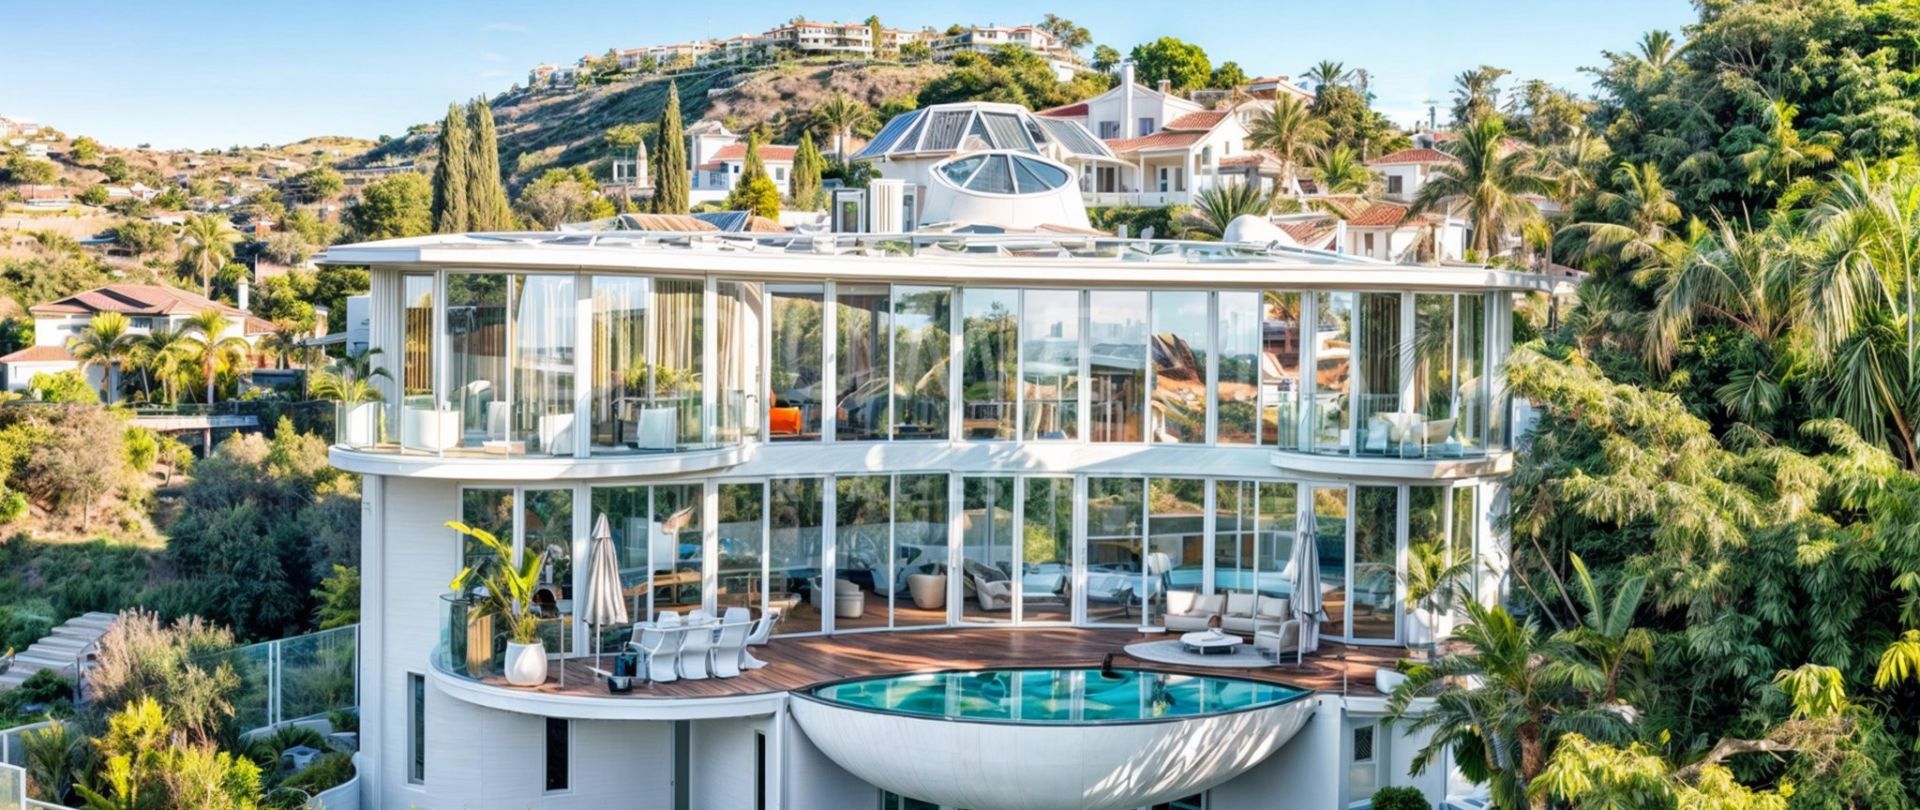 Unieke villa met een uniek architectonisch ontwerp en uitzicht op zee in El Paraiso